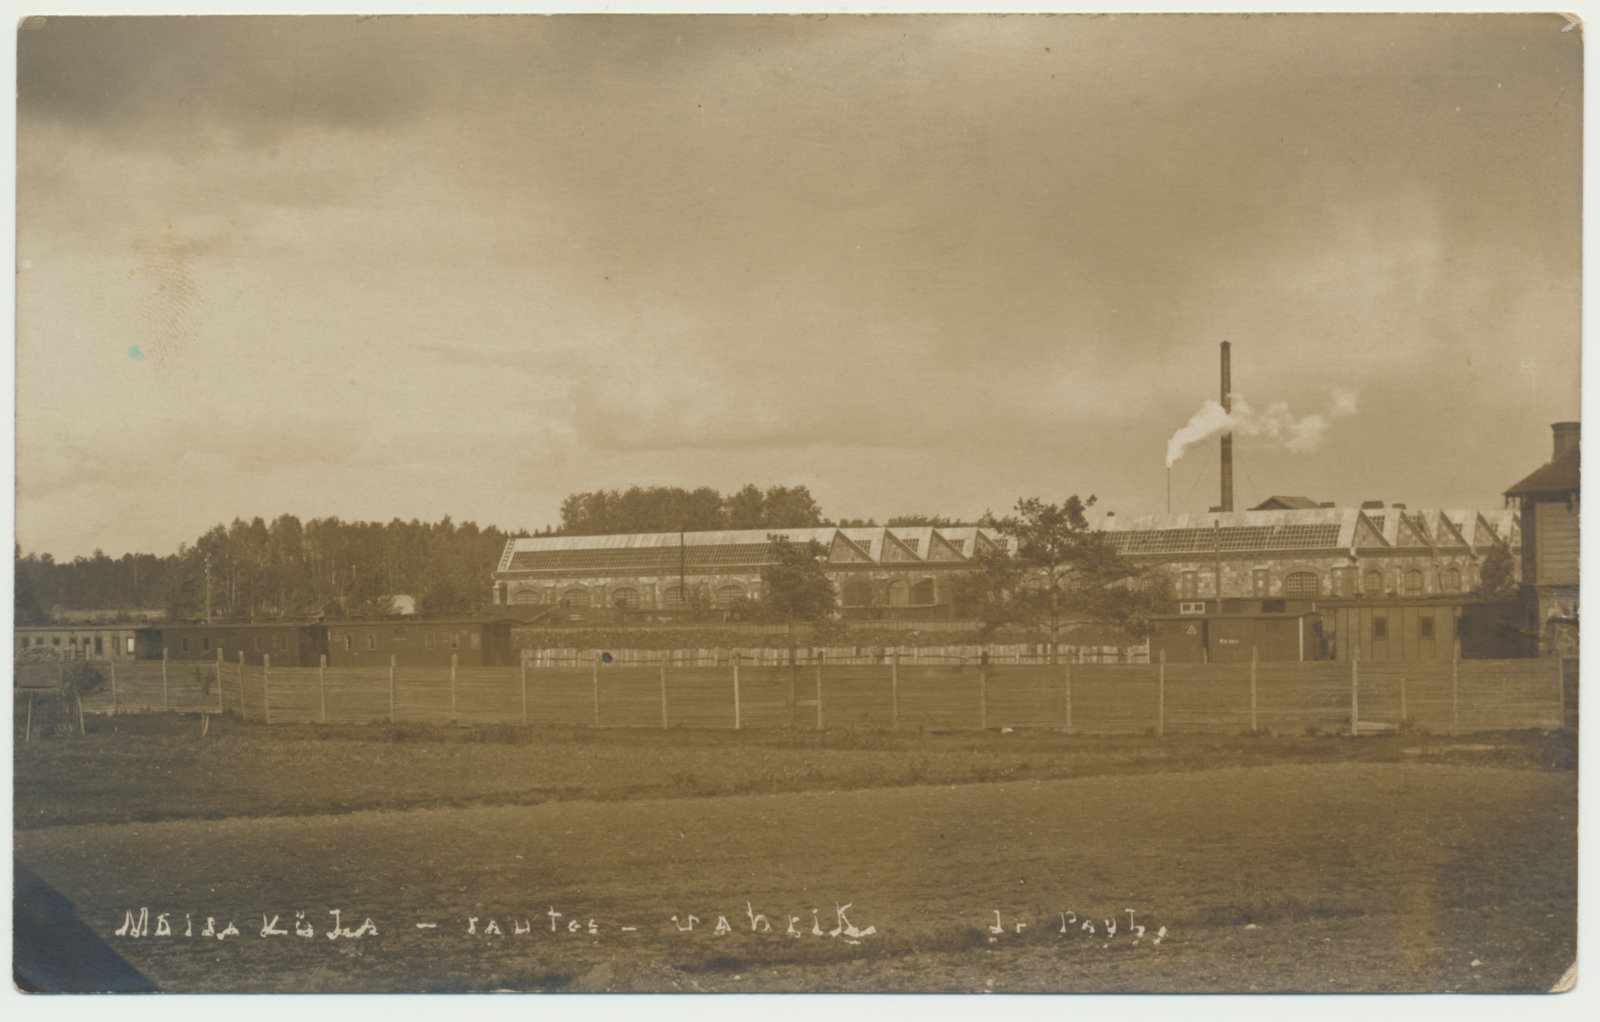 foto, Halliste khk, Mõisaküla, raudtee vabrik, u 1925, foto J. Paul